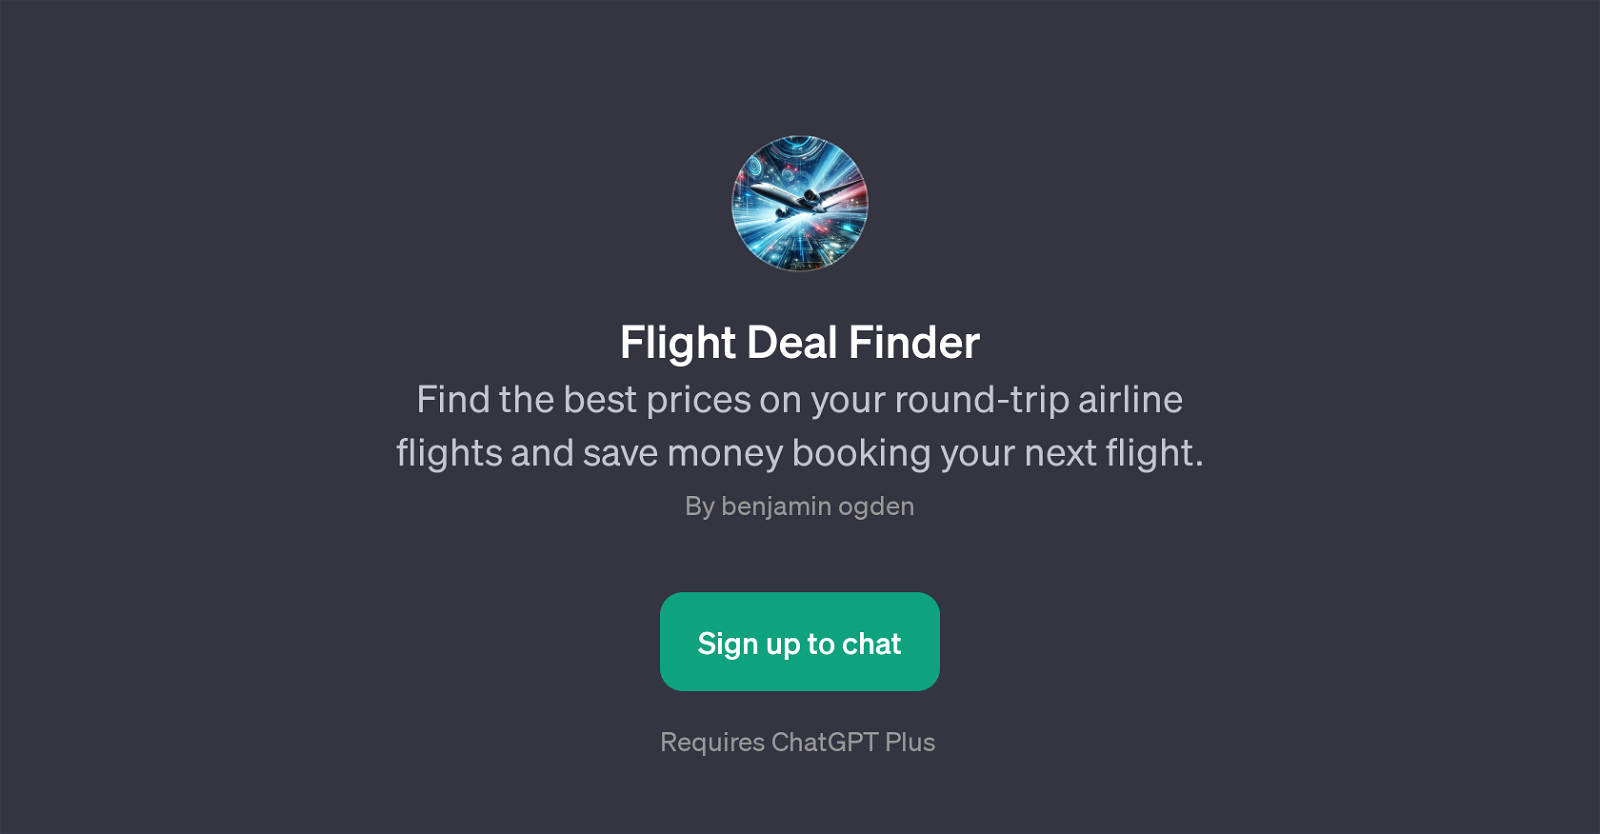 Flight Deal Finder website